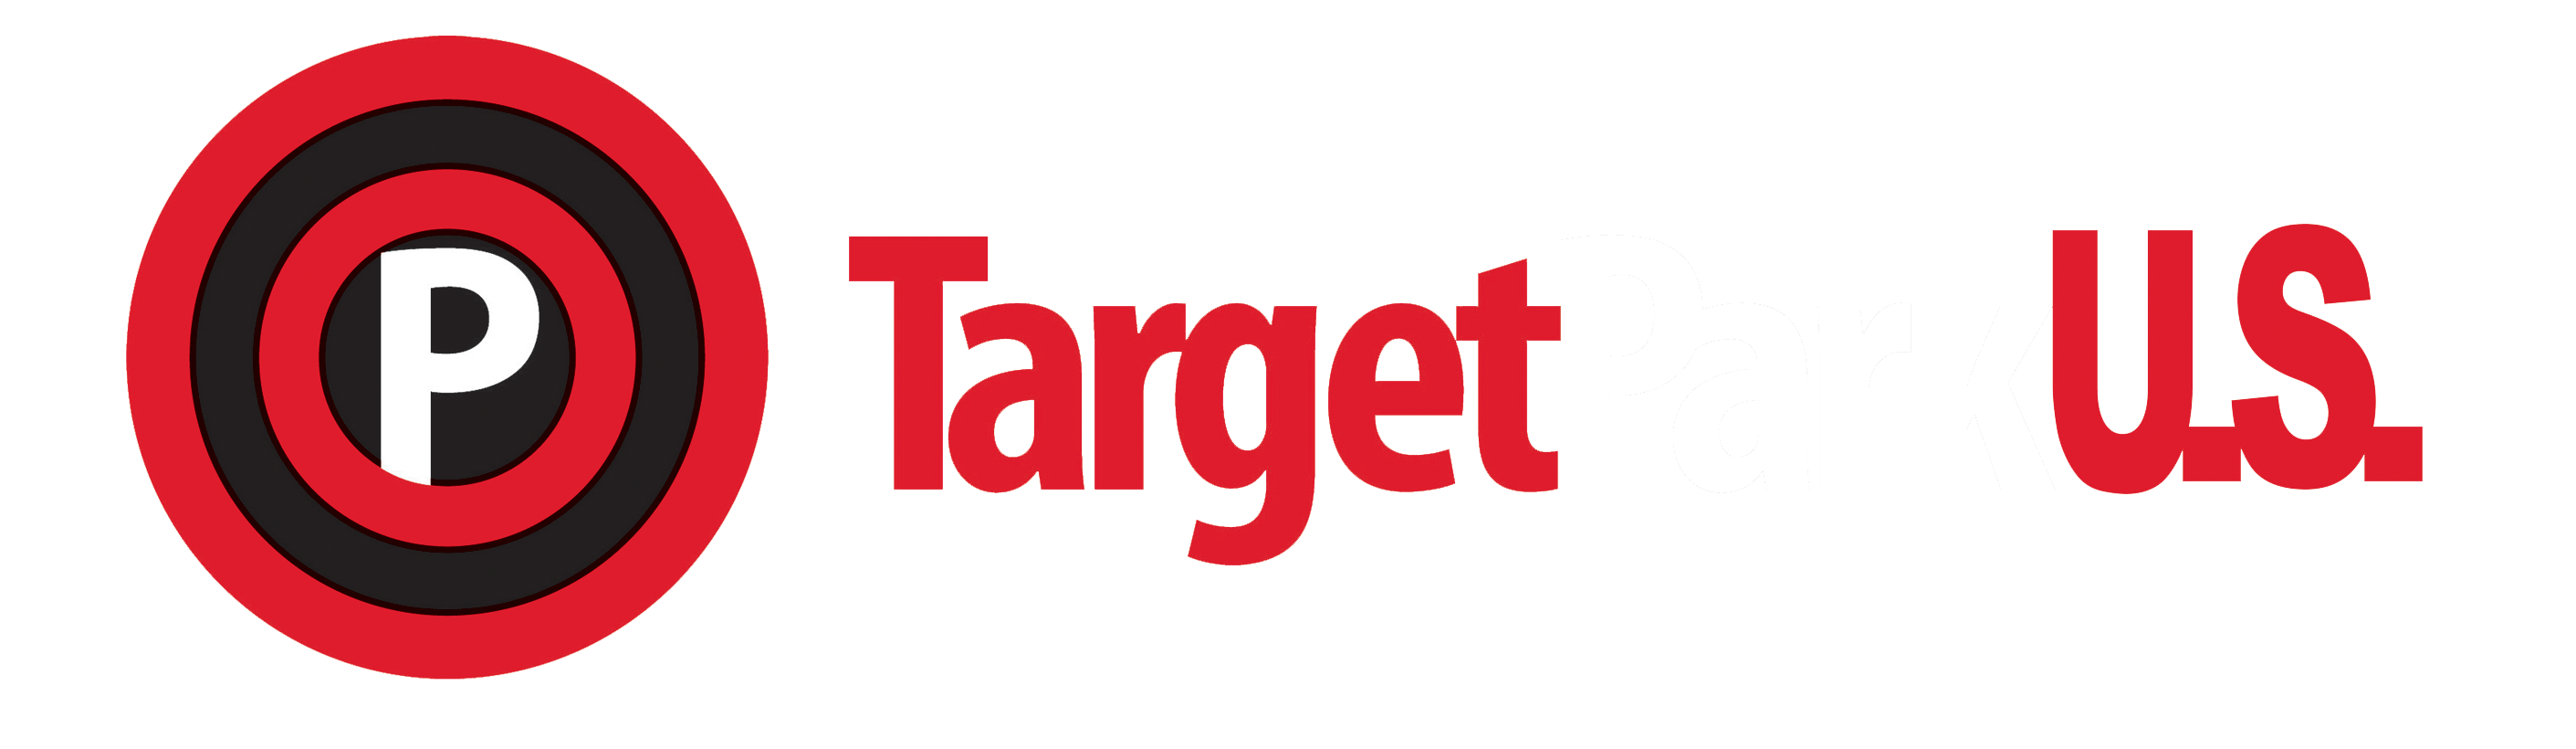 Www.target Logo - Target Park | TP